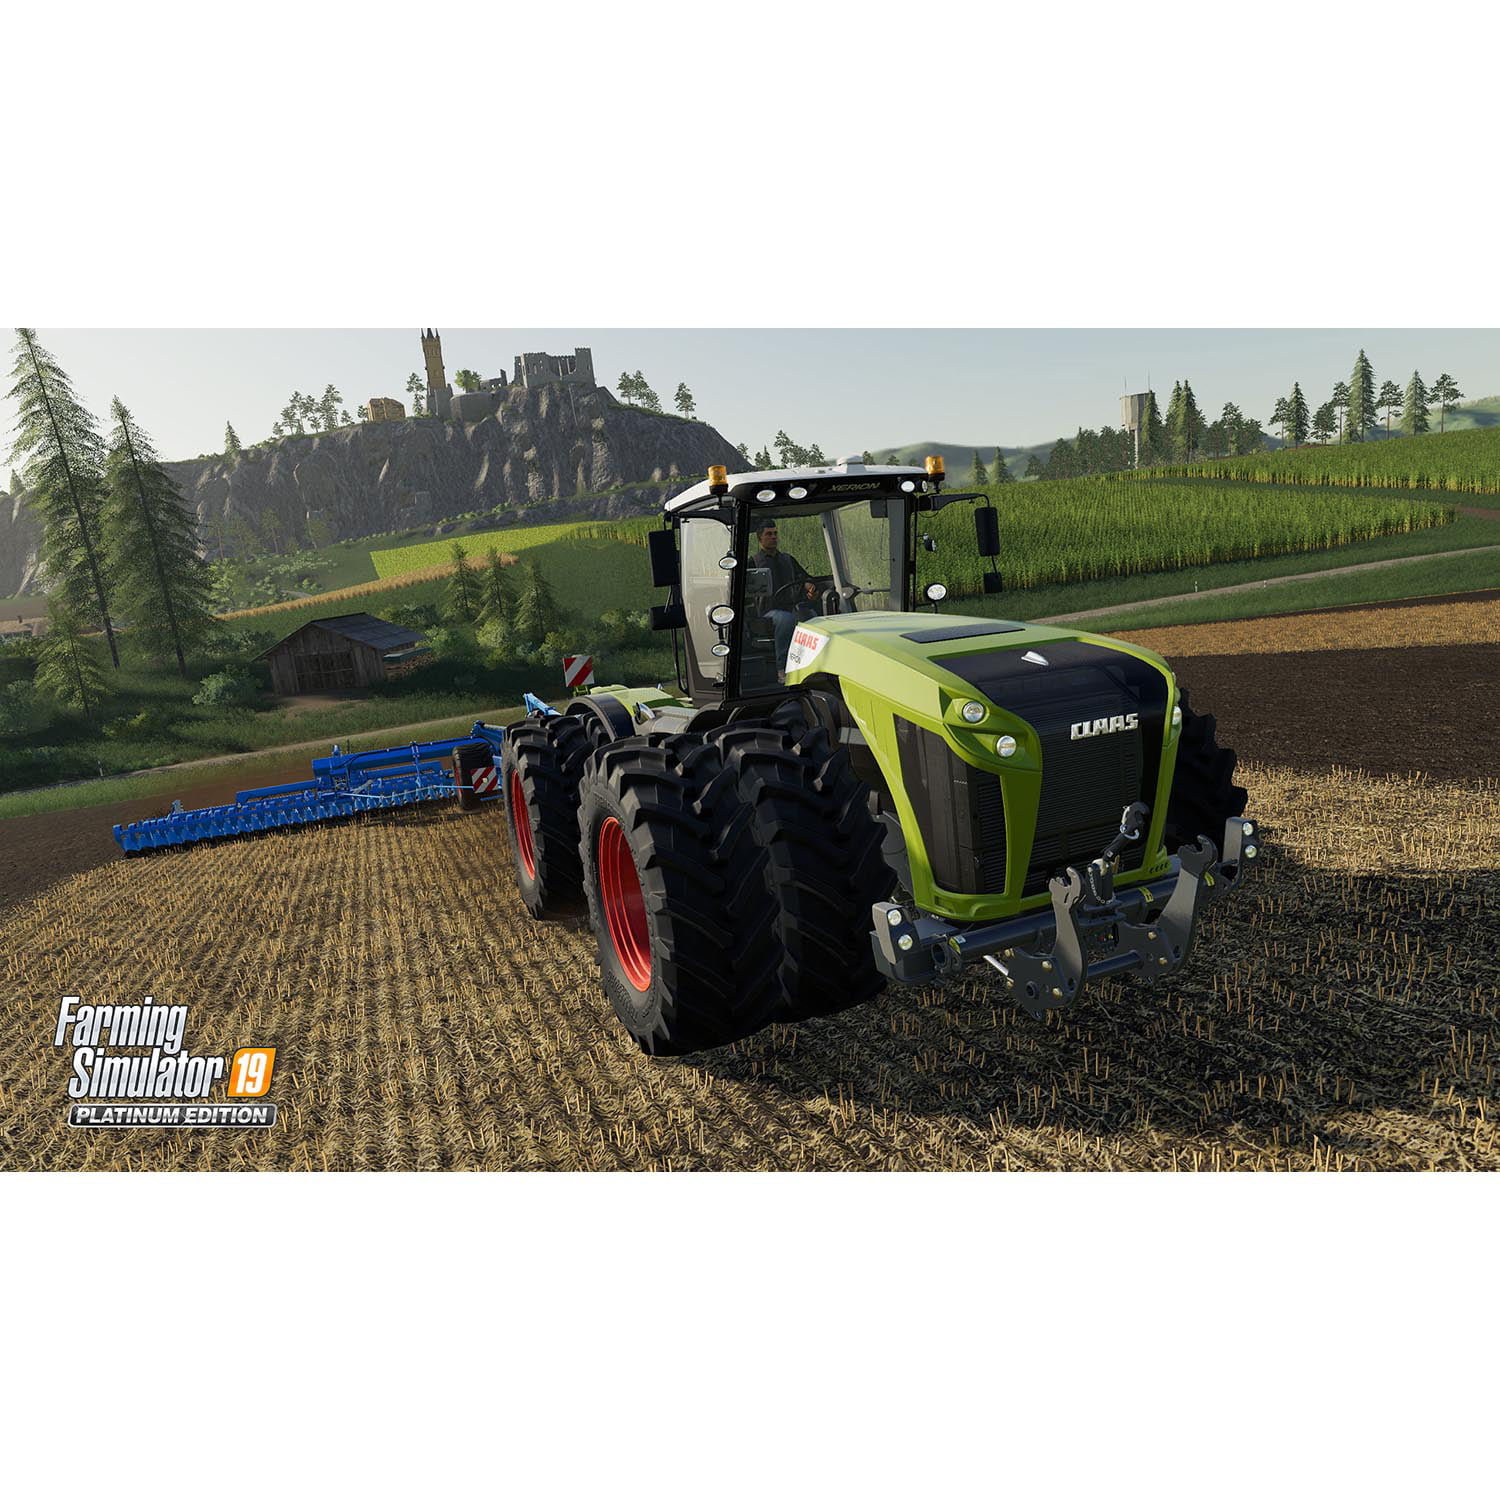 Farming Simulator 19 PS4 em Promoção na Americanas